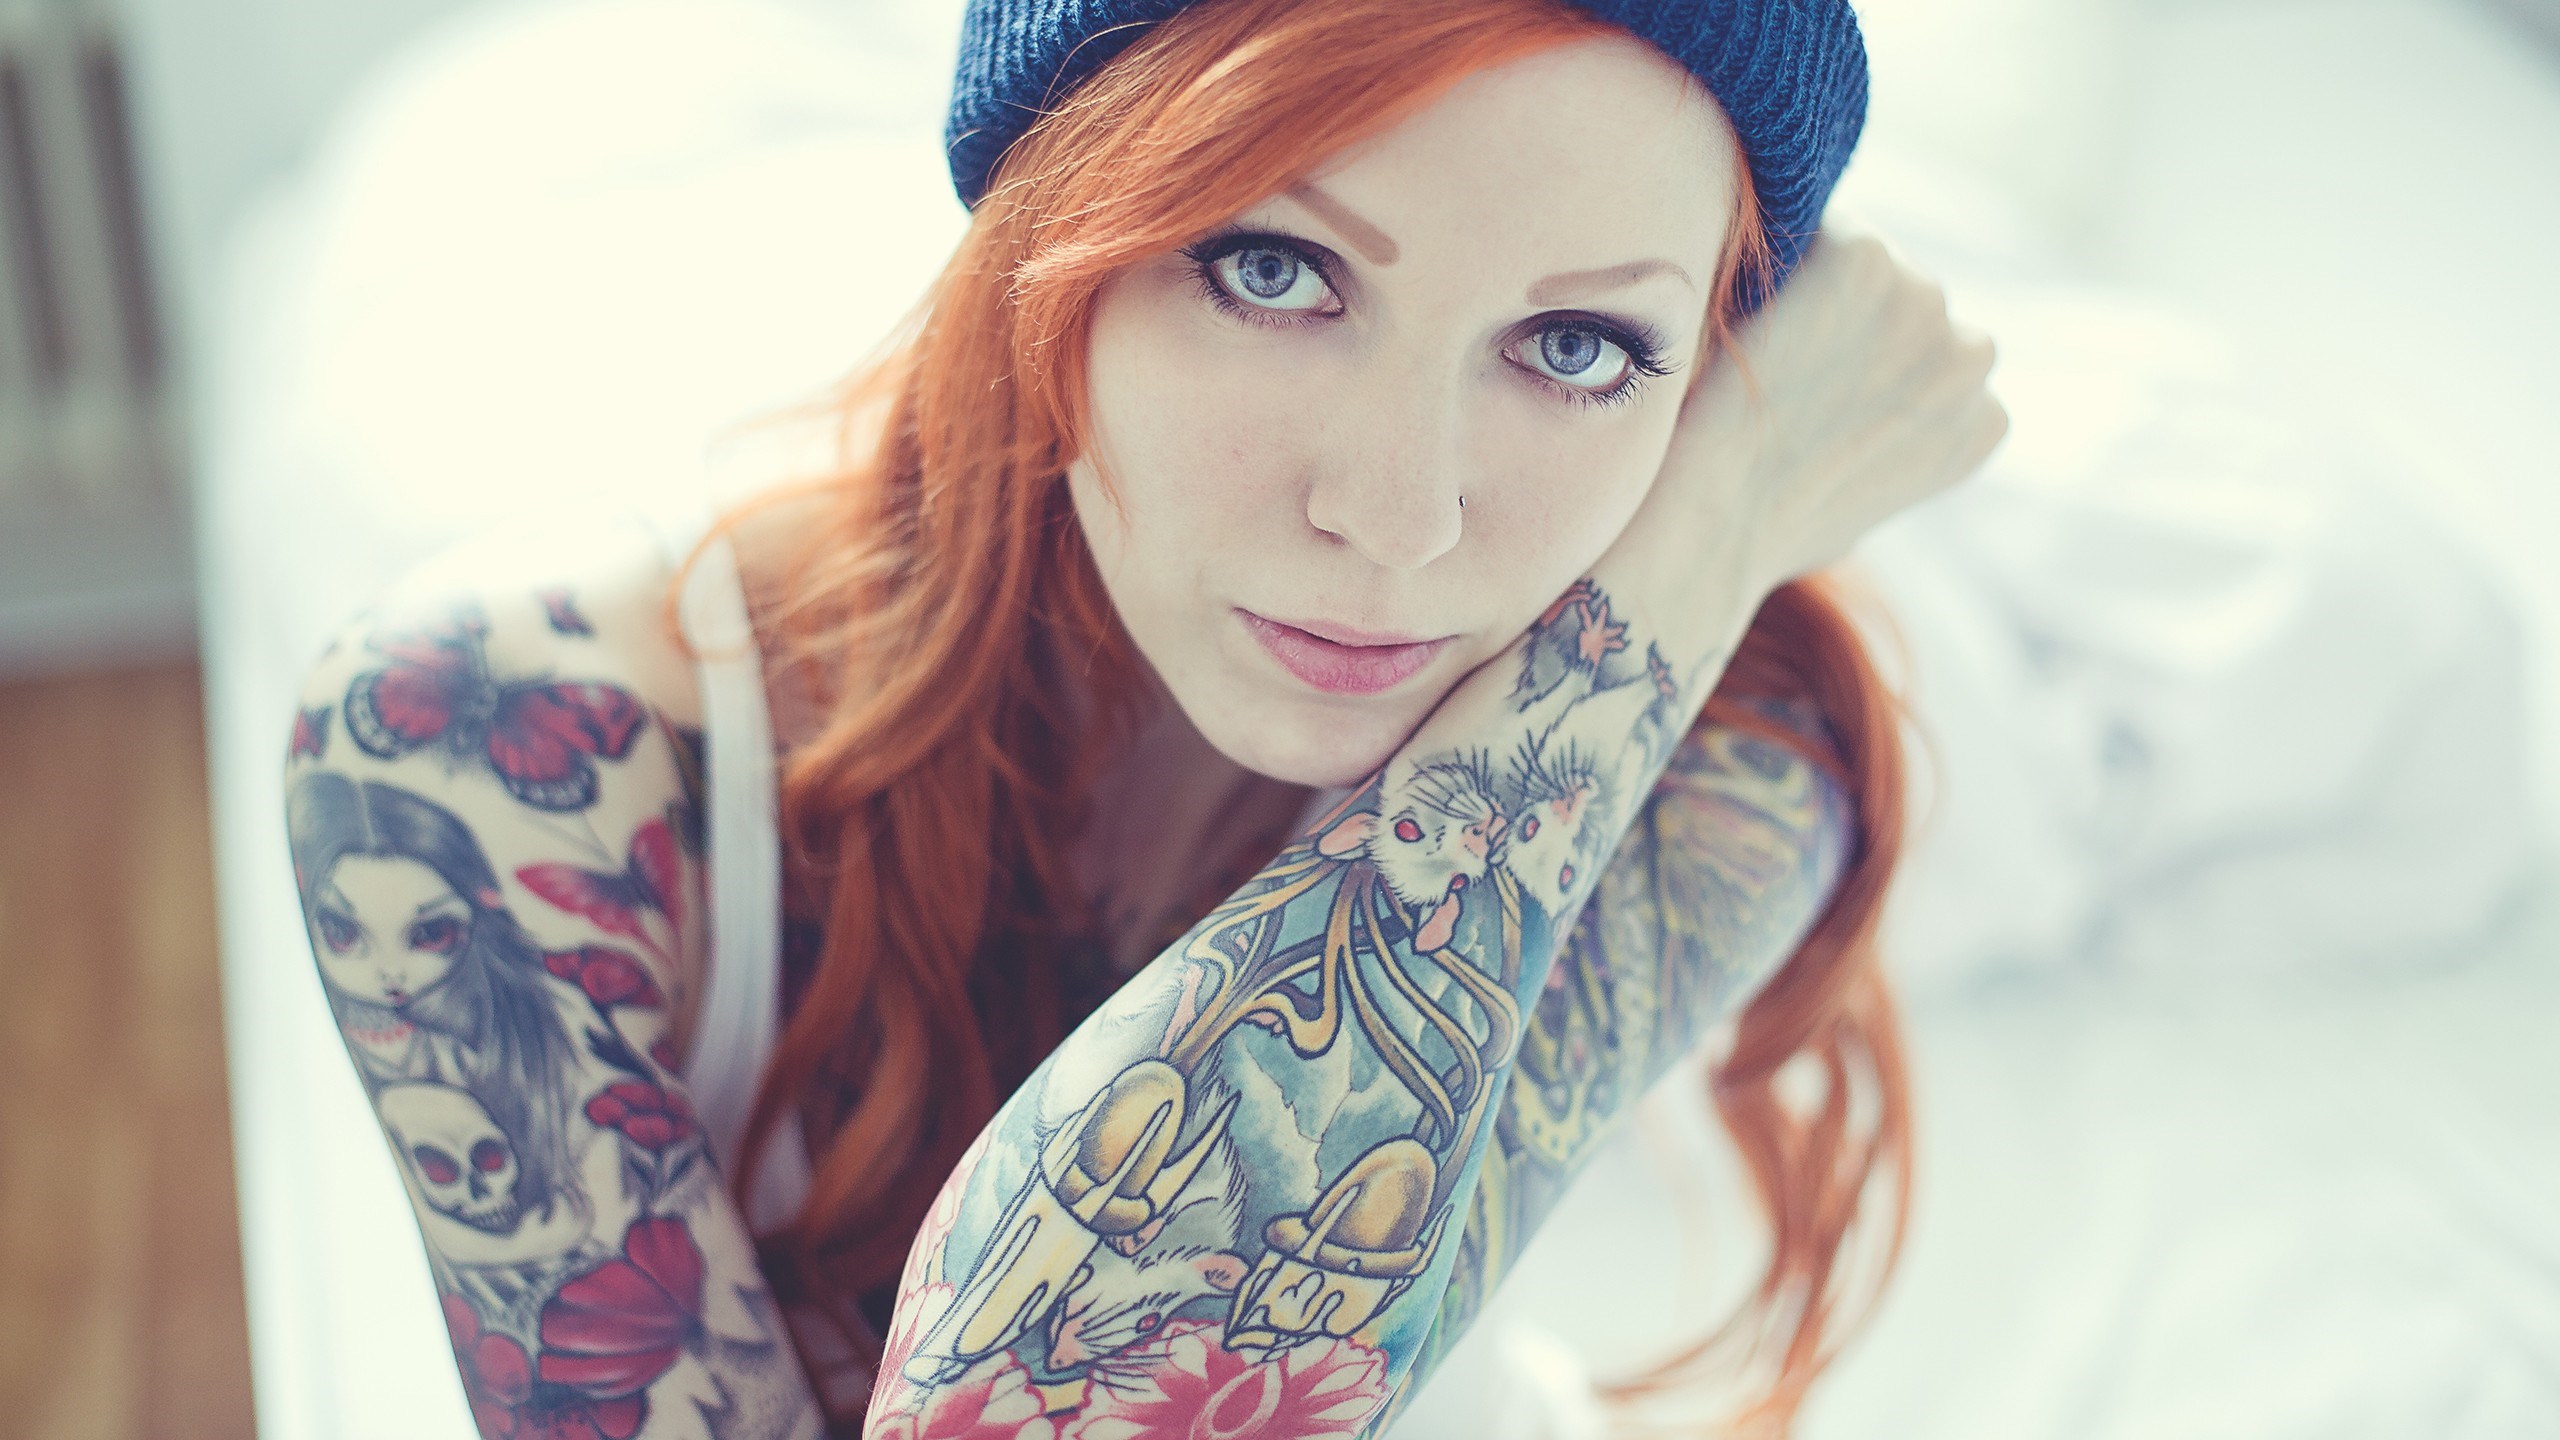 Redhead Girl Tattoos Wallpaper 2560x1440 20660